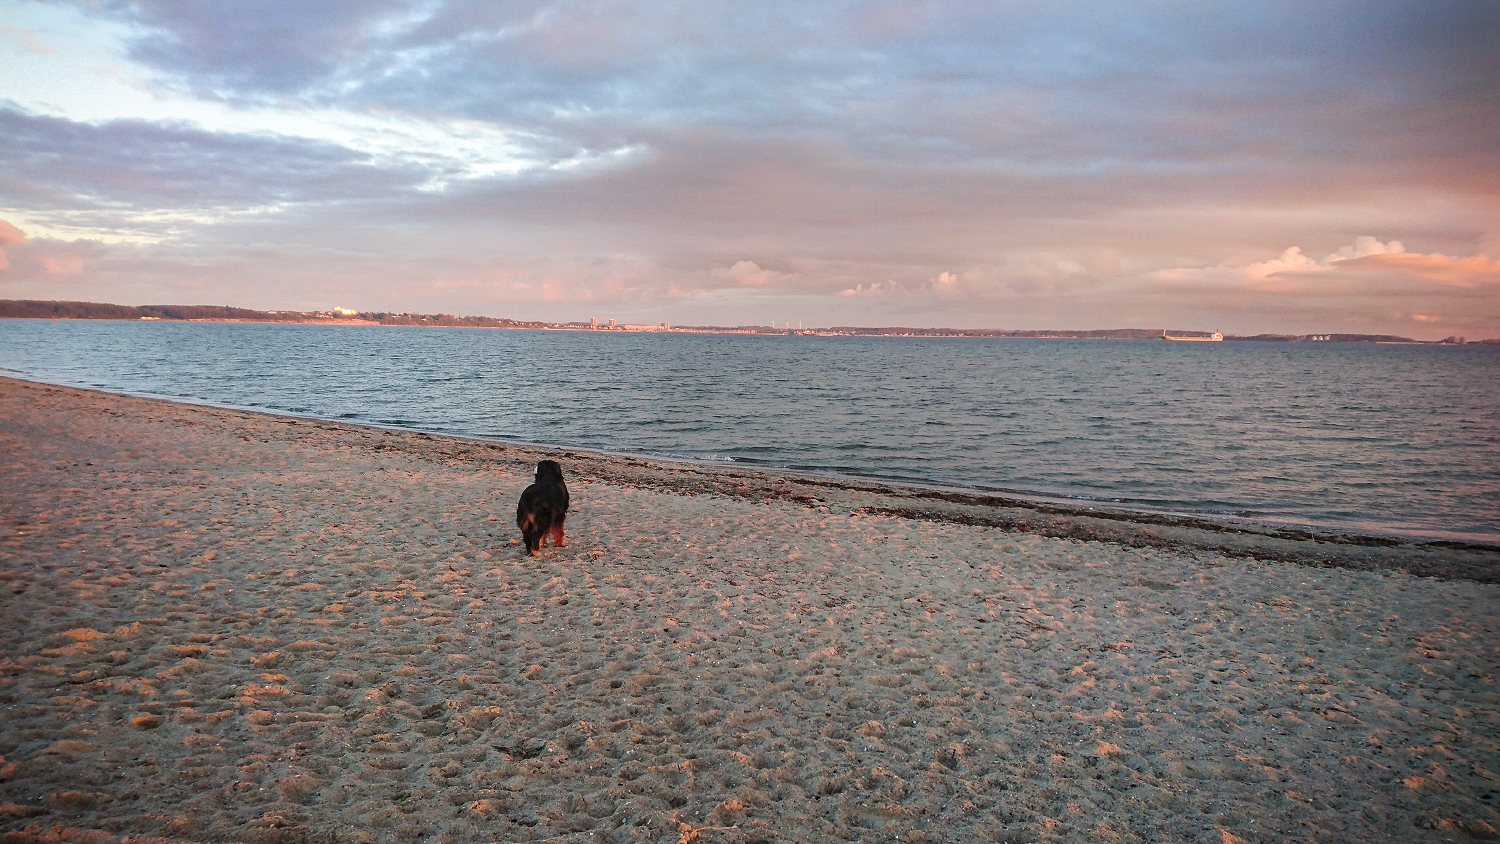 Da lohnt sich das frühe Aufstehen: Morgendlicher Spaziergang am Strand von Laboe.